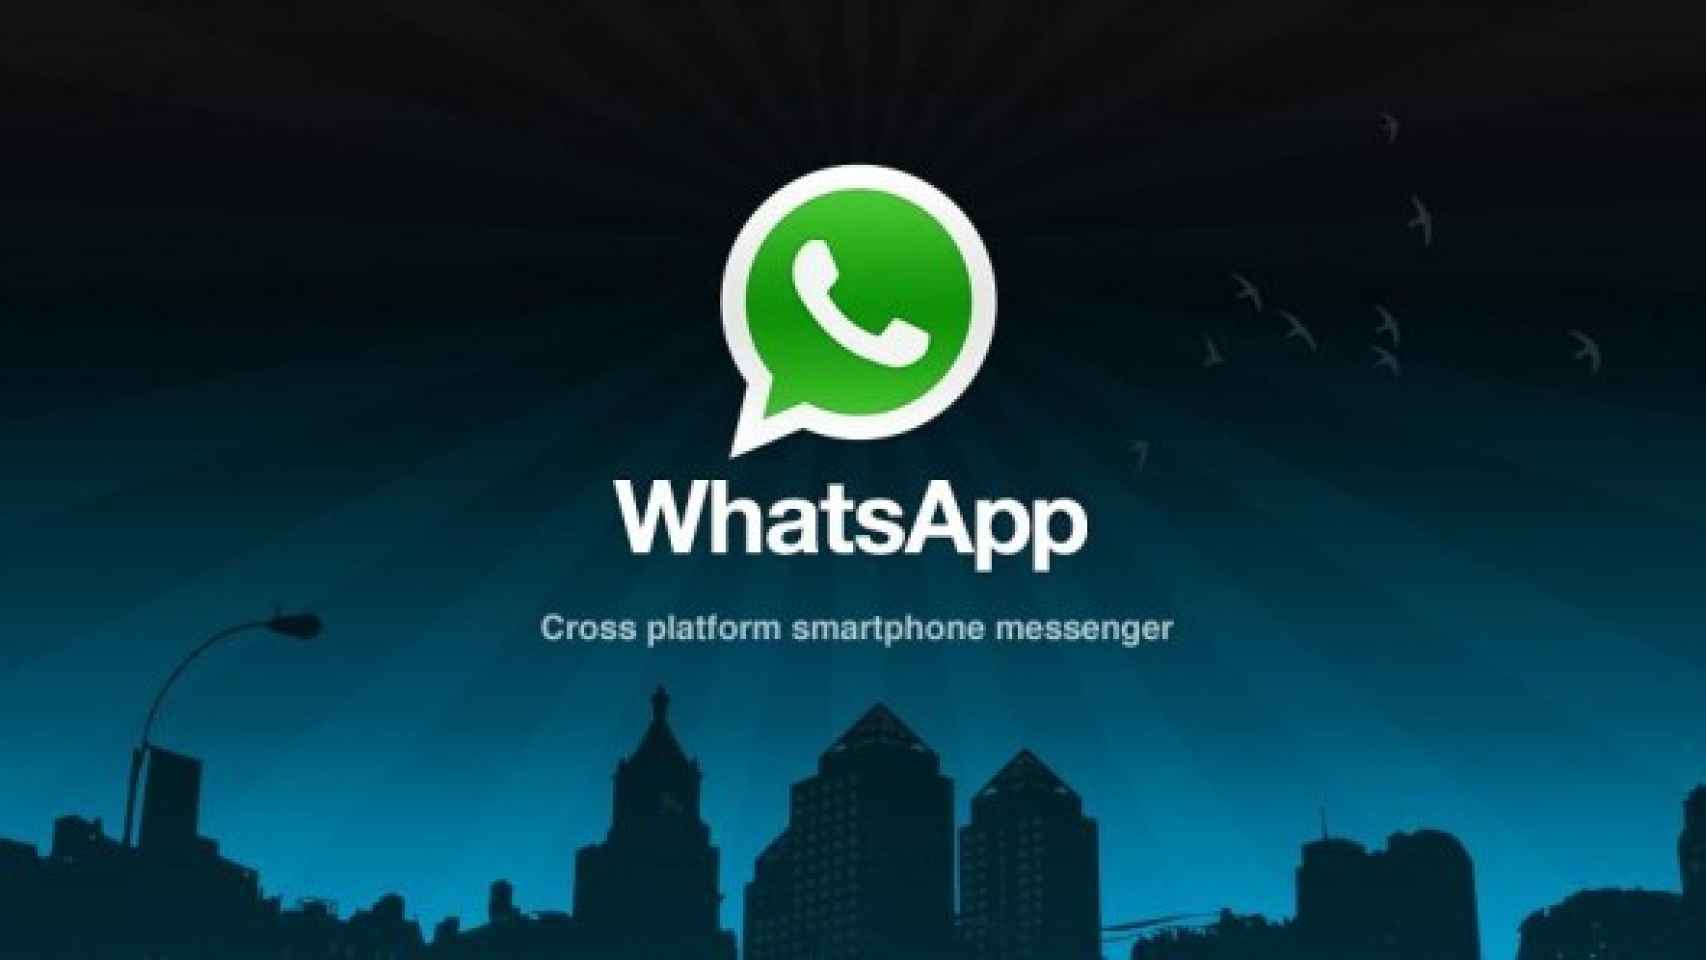 WhatsApp, mensajería instantánea de alta calidad y multiplataforma gratuita